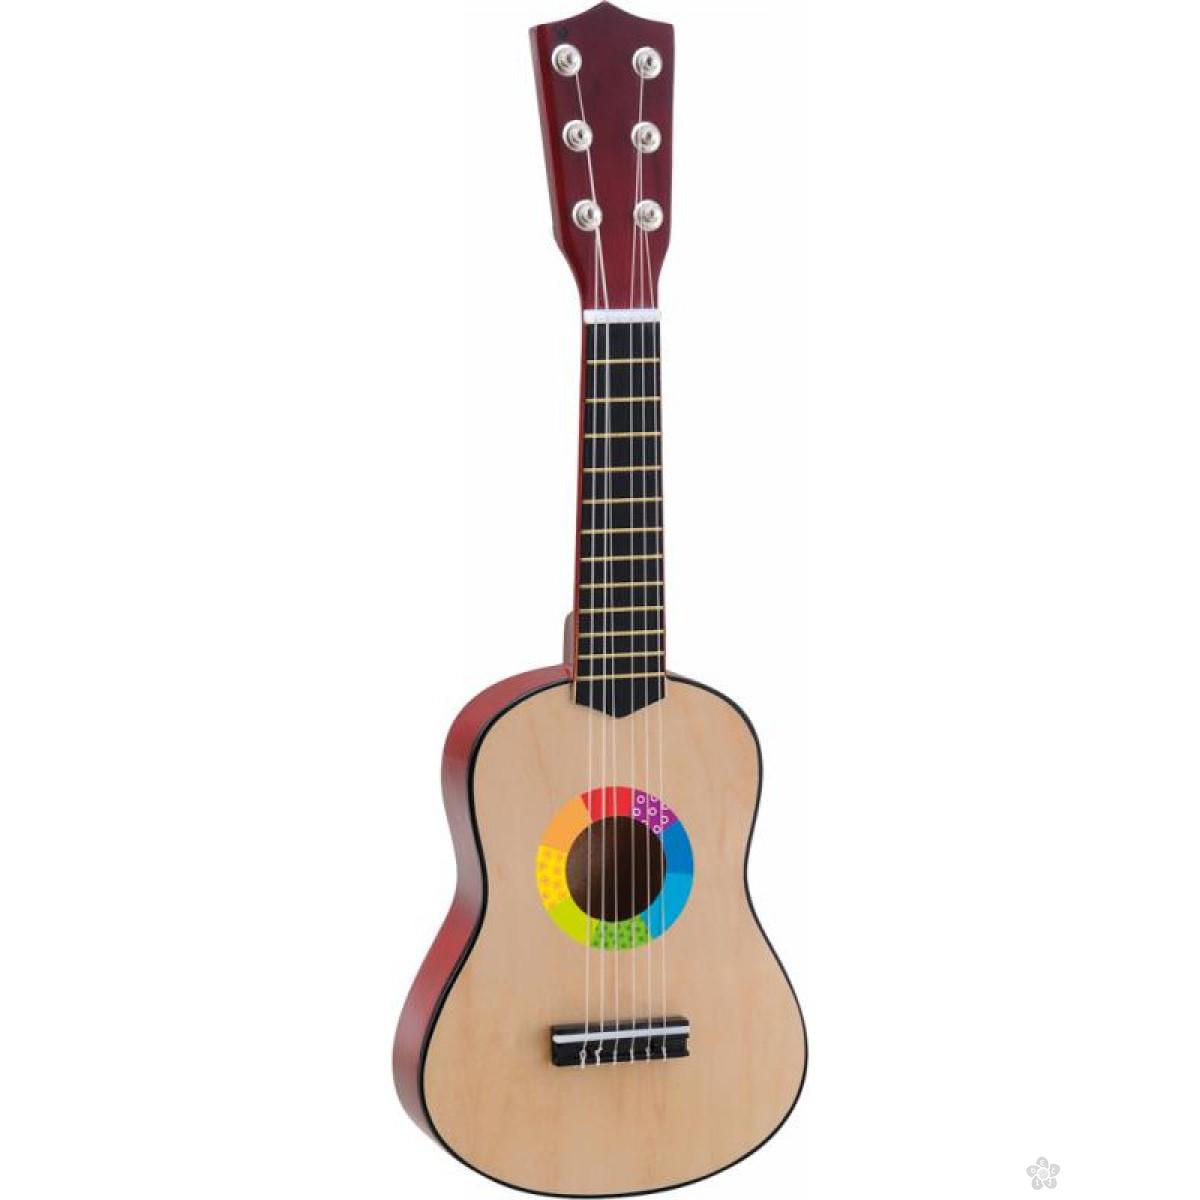 Drvena muzička igračka gitara 91151 